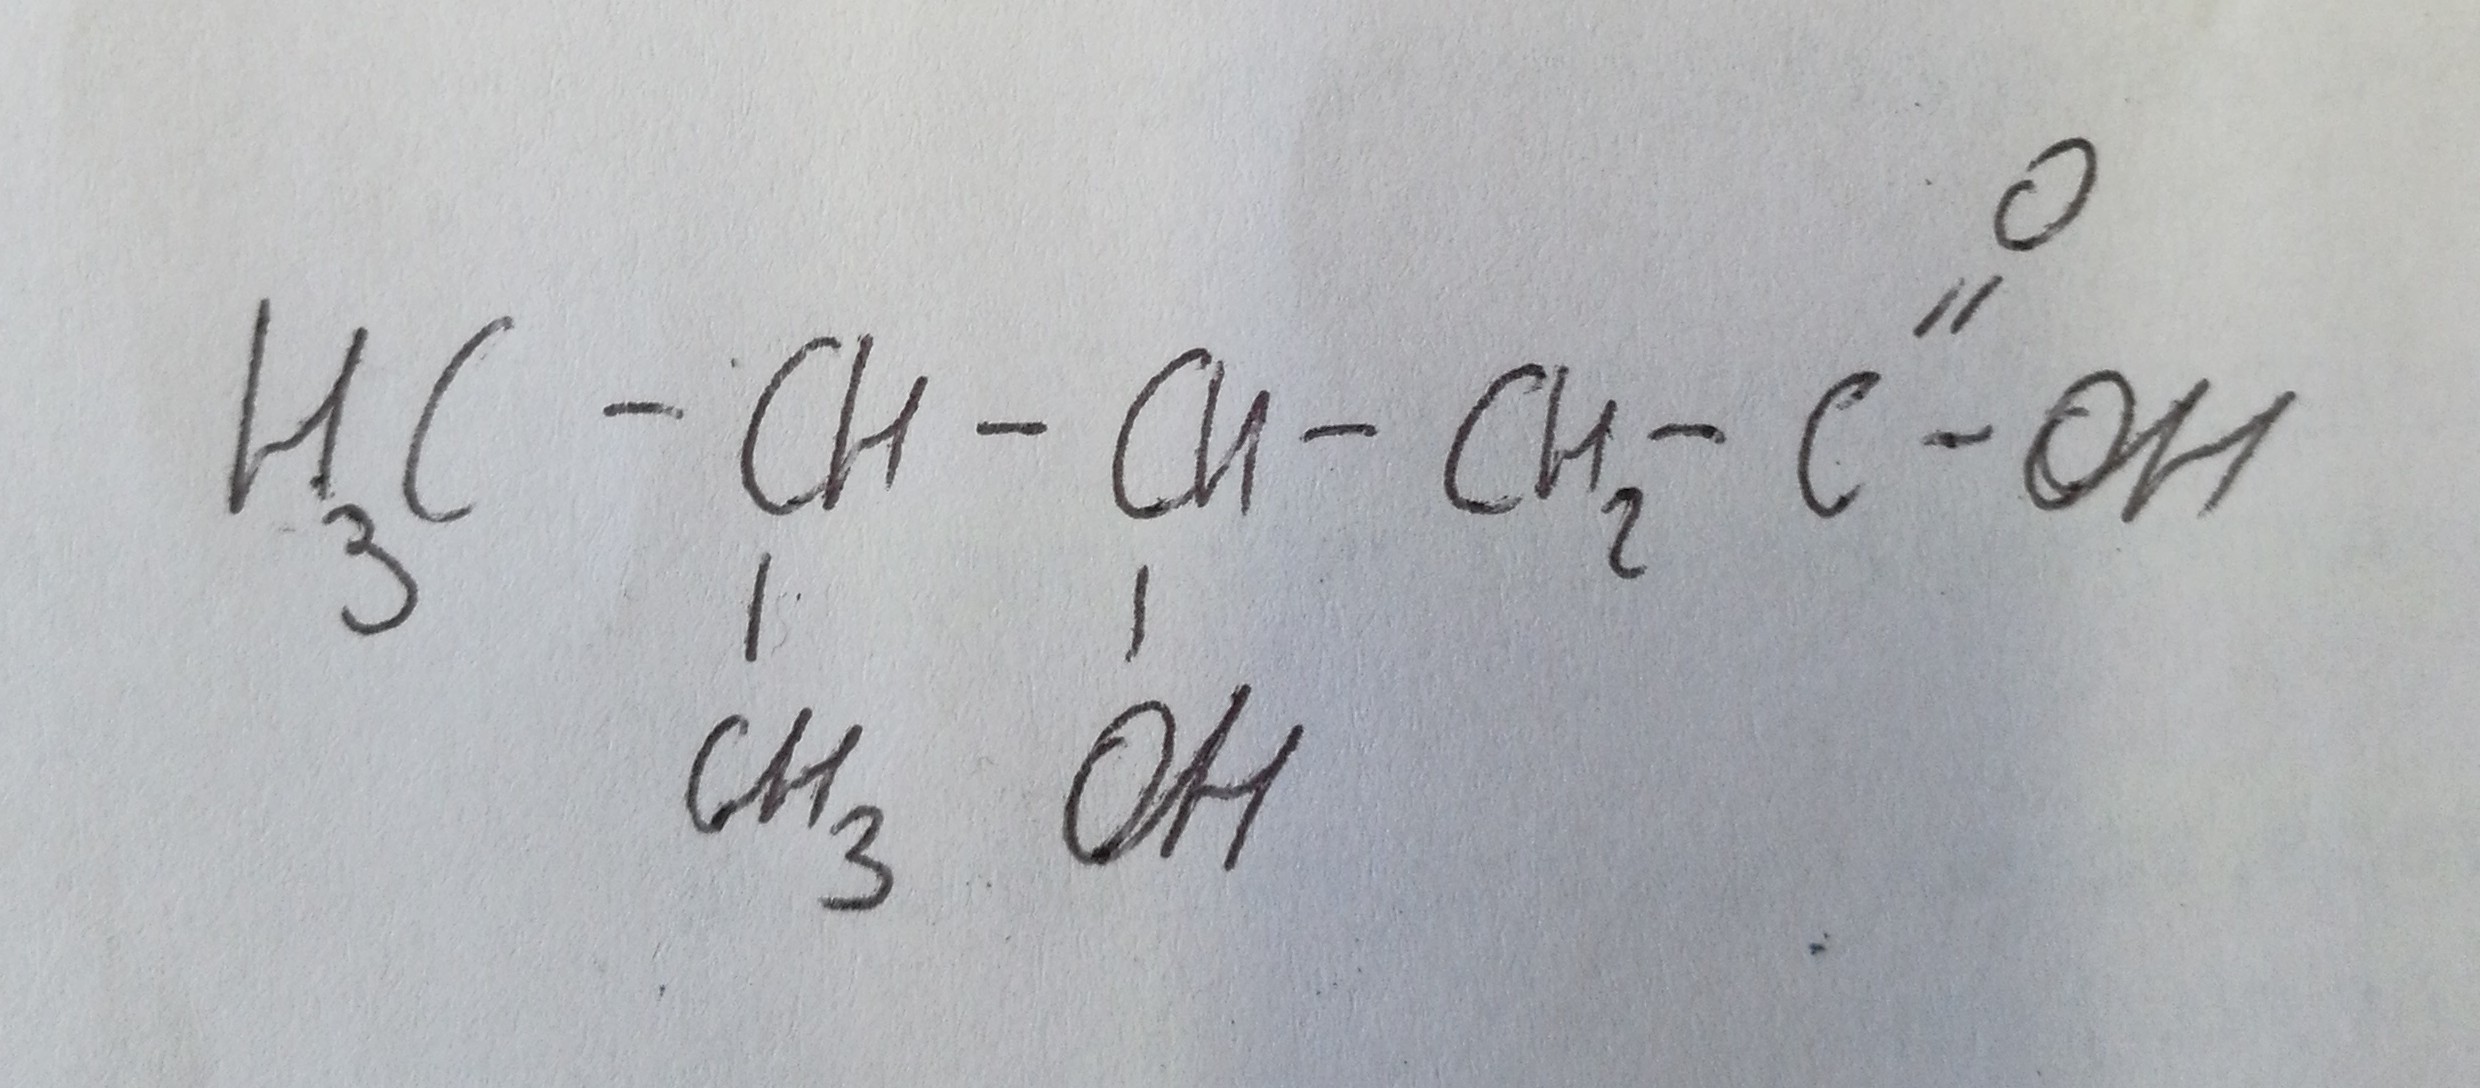 Метилпентановая кислота структурная формула. 3 Метилпентановая кислота. 2 Метилпентановая кислота структурная формула. 3 Метилпентановая кислота структурная. 2 метилпентановая кислота формула